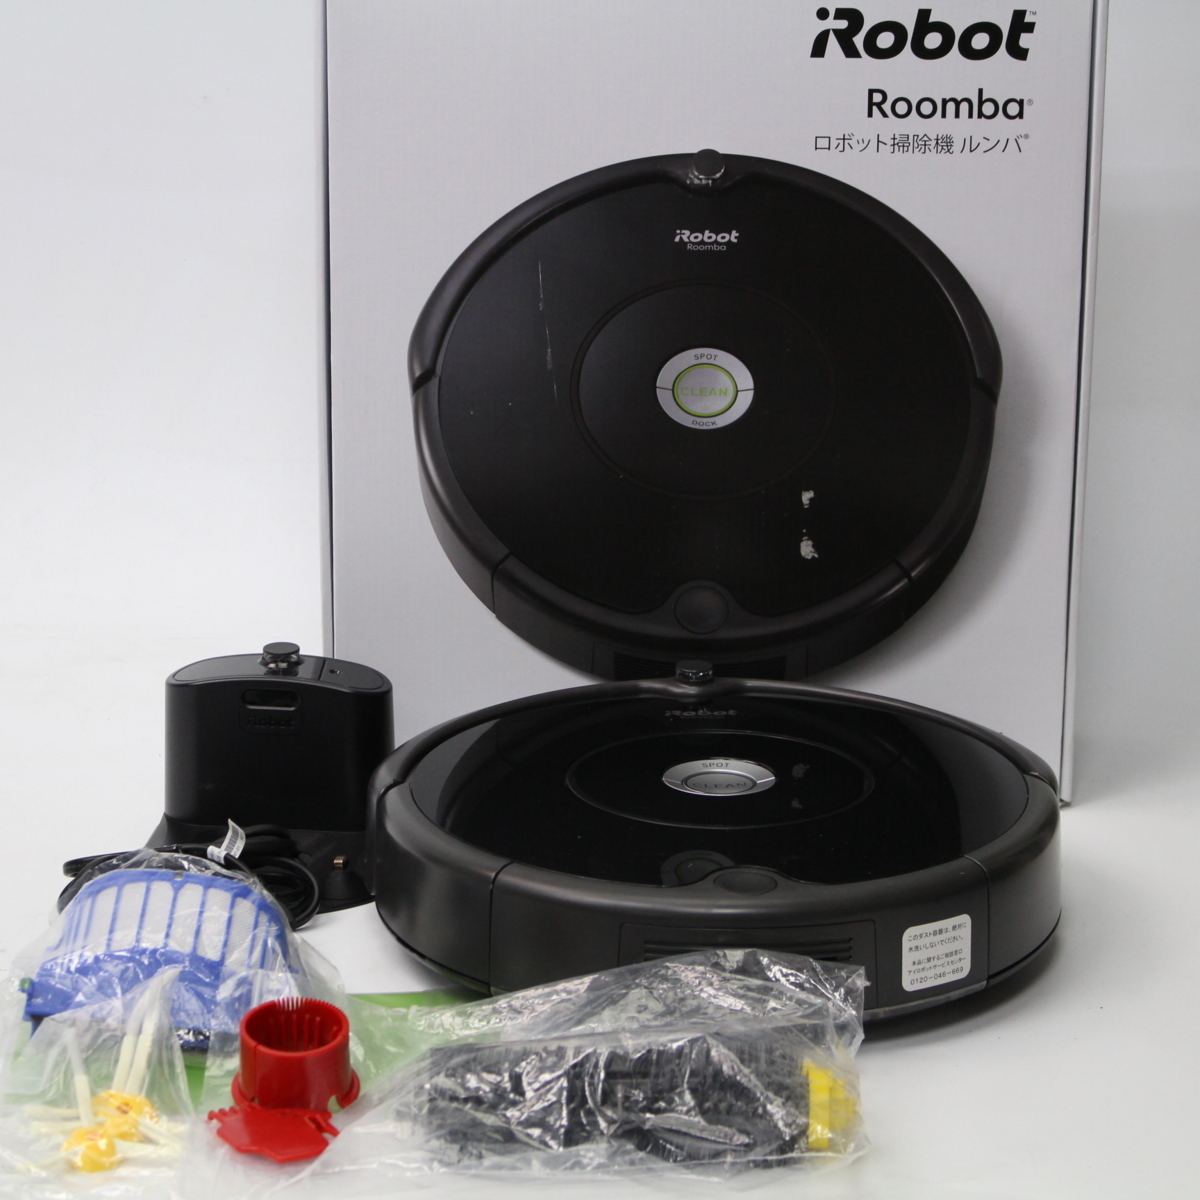 ルンバ Roomba 606 アイロボット iRobot ロボット掃除機